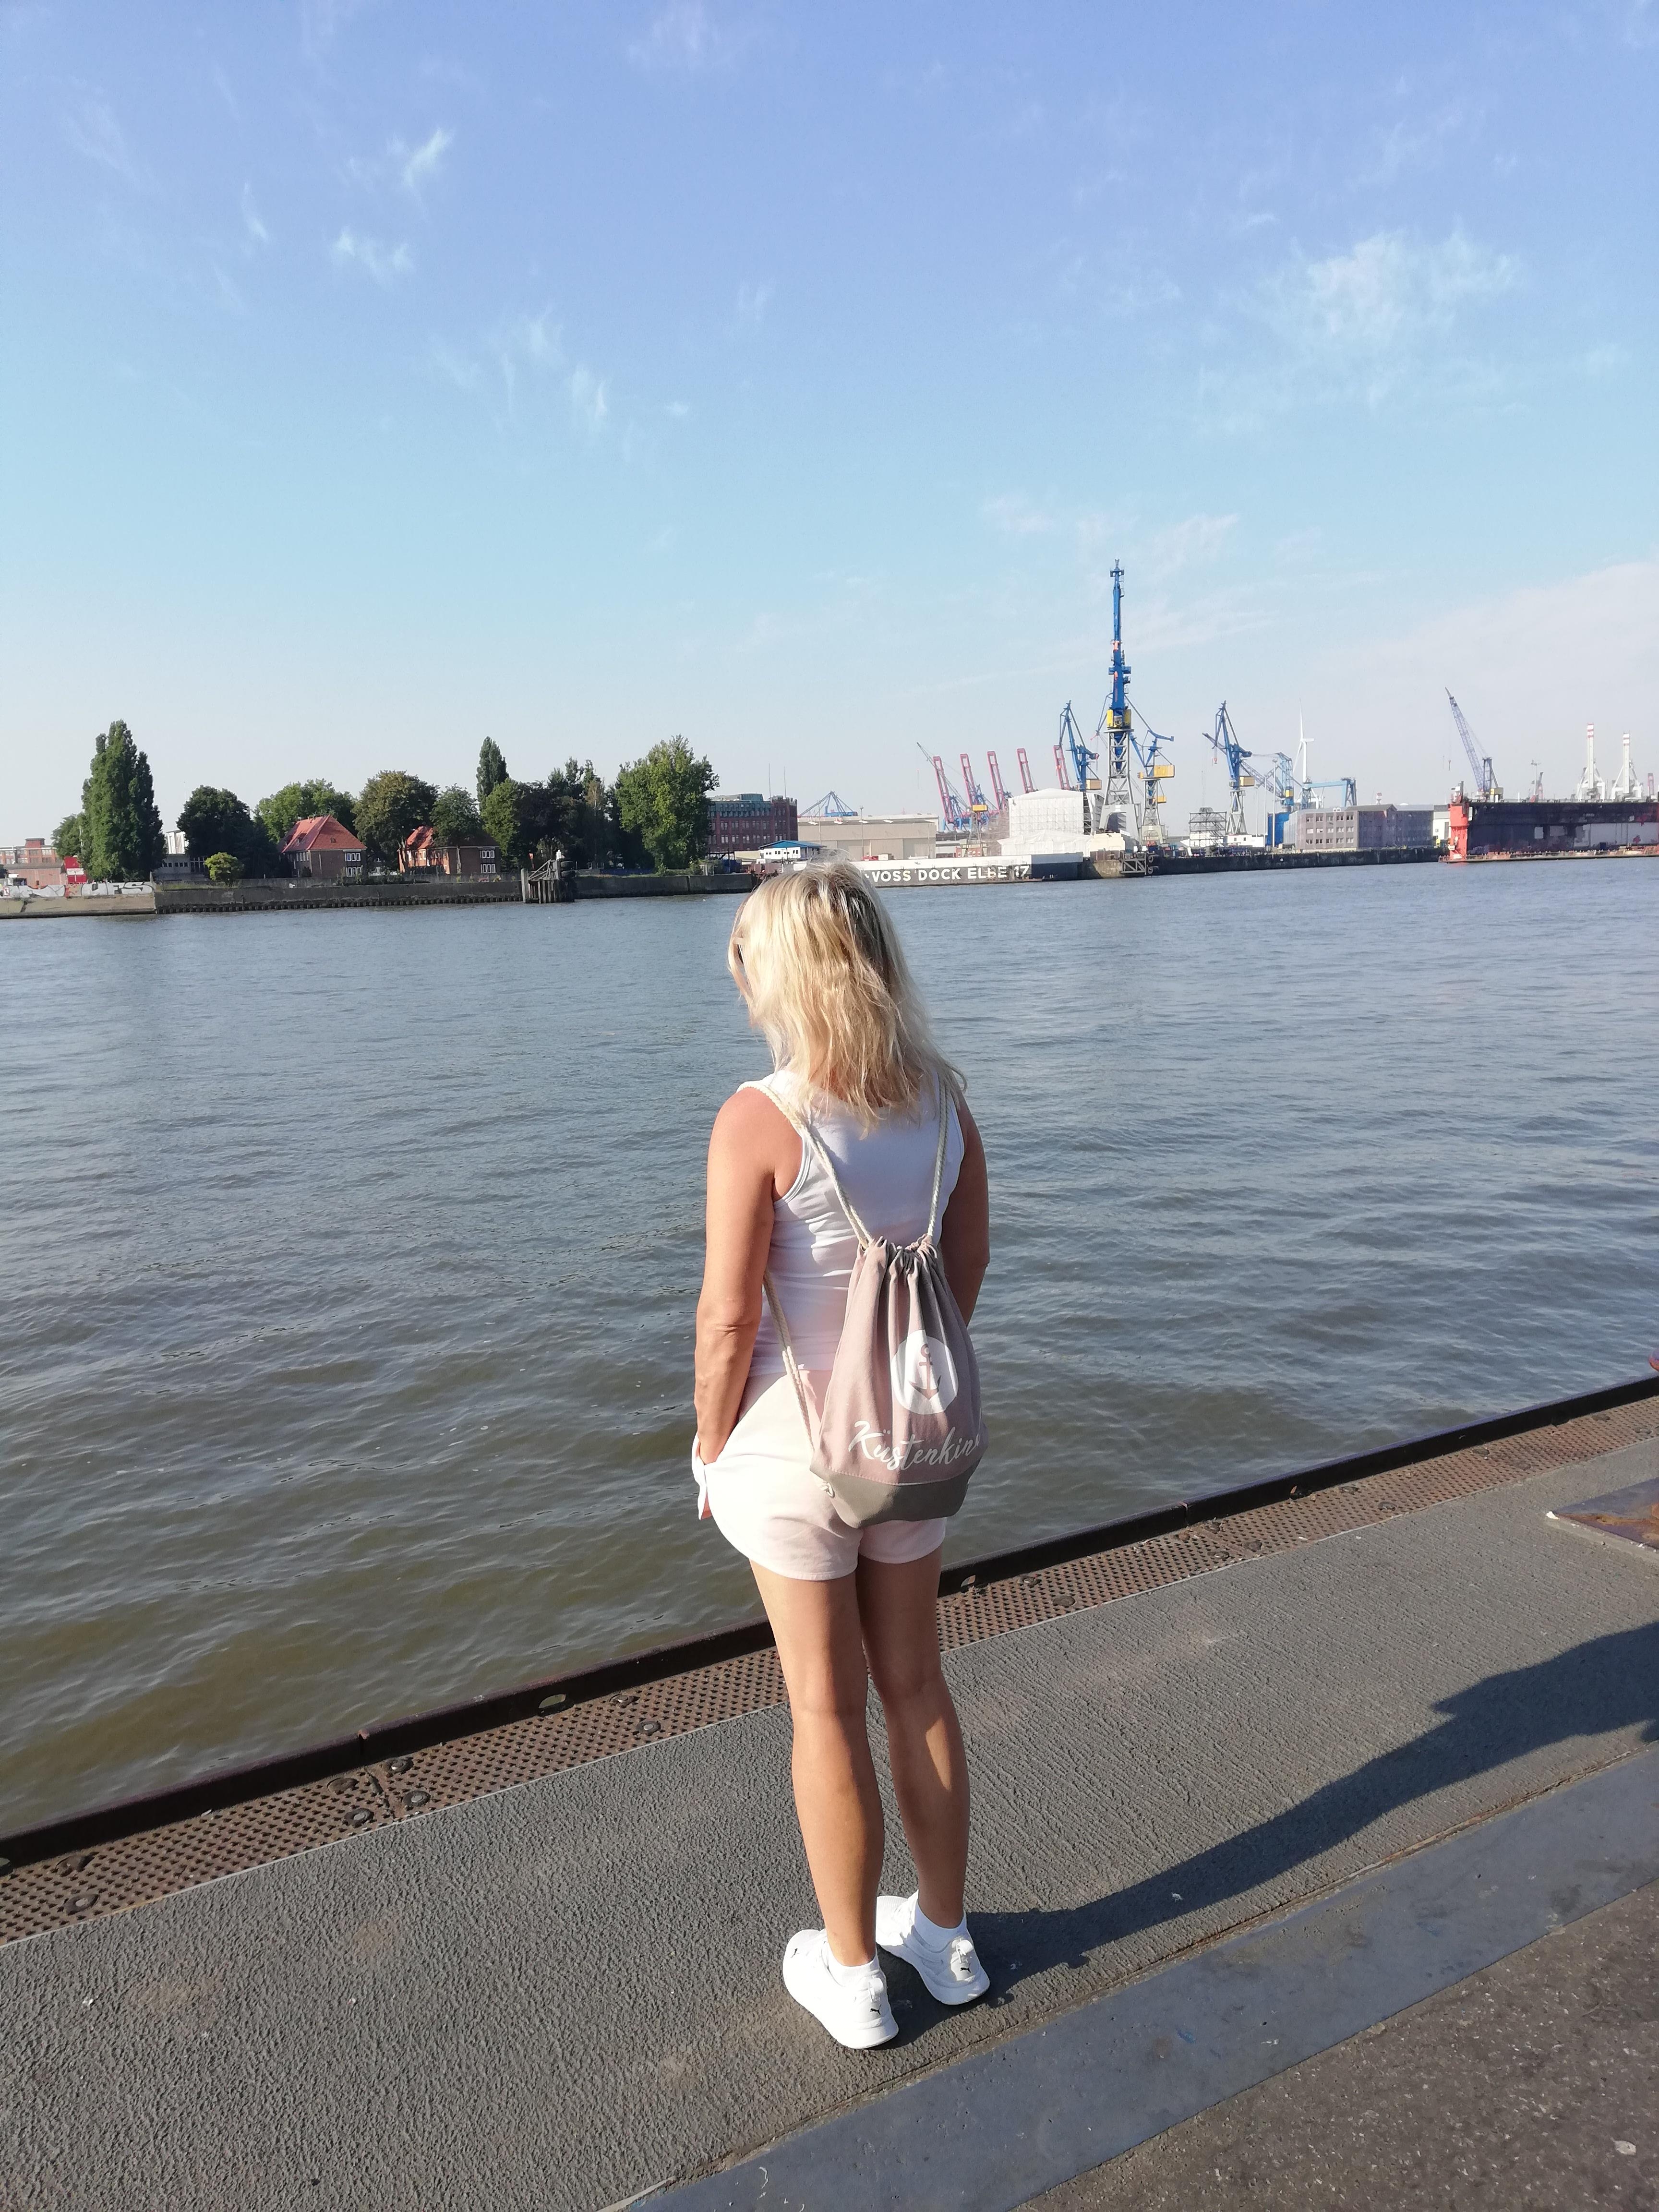 #heimatentdecken #travellchallenge

Hamburg das Tor zur Welt -
Eine Stadt die mir besonders gut gefällt ❤️🍀